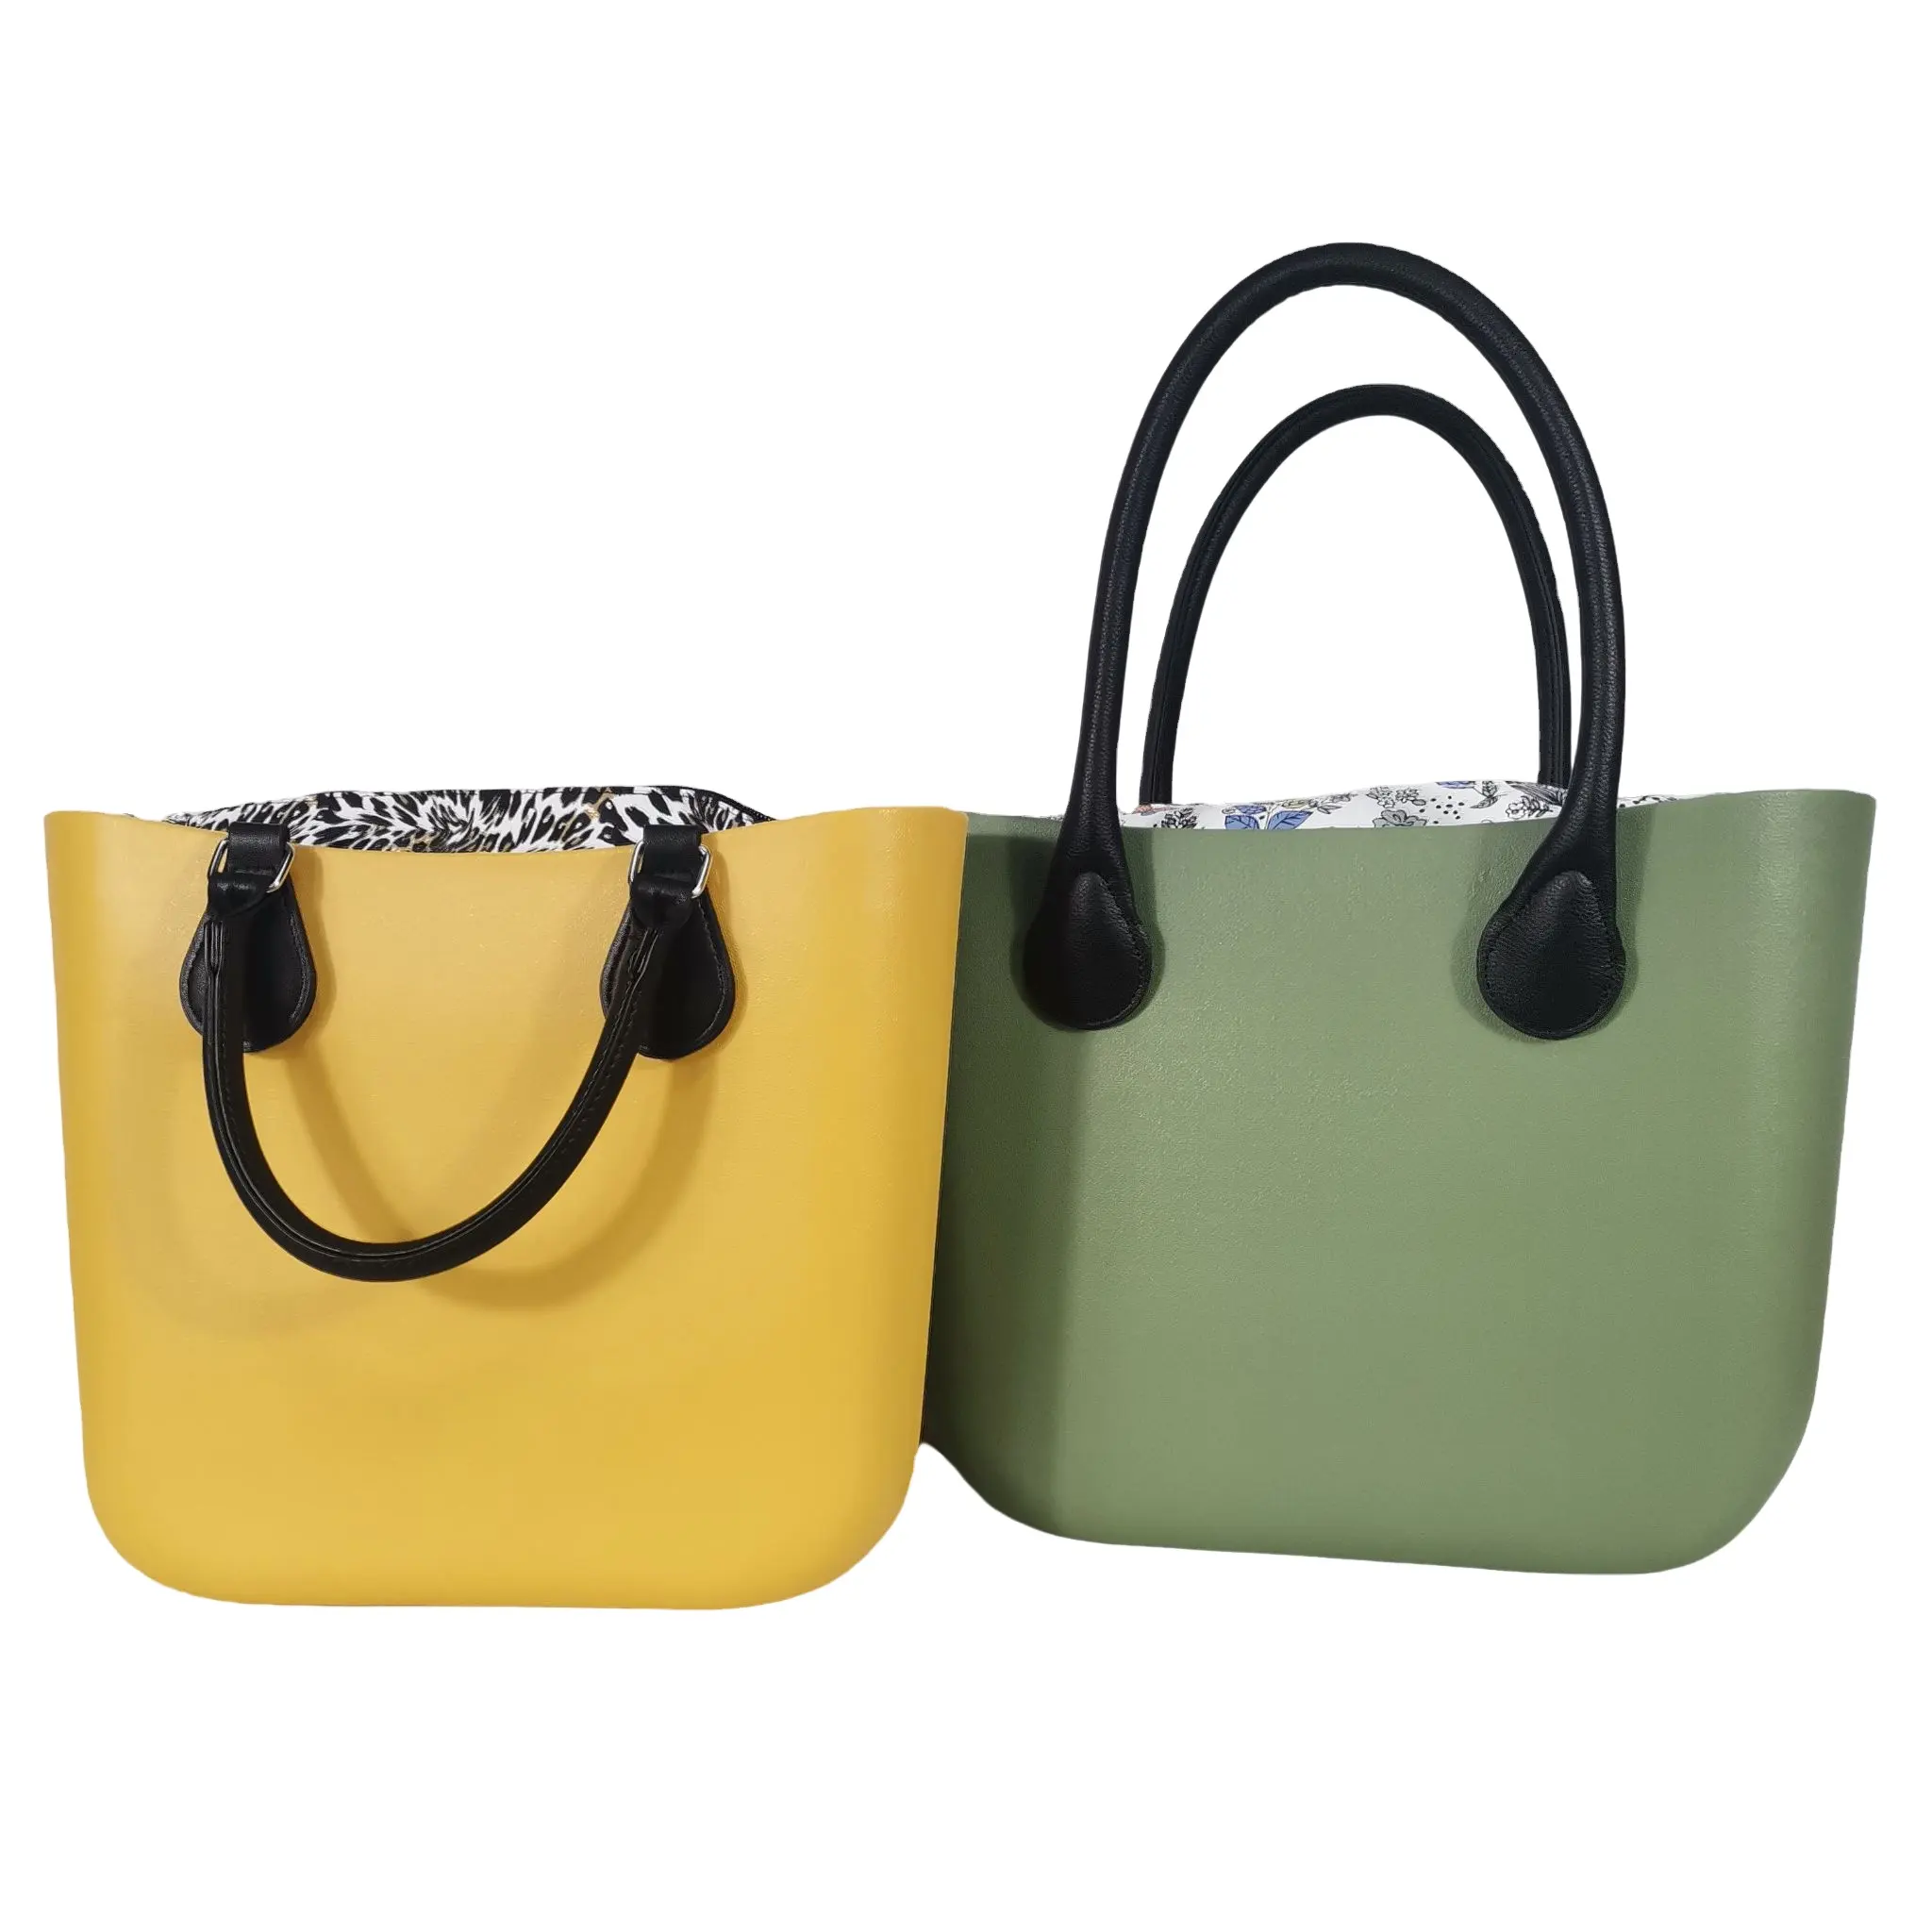 rubber waterproof tote bag pool tote custom bags ocean print fashion handbags eva foam tote mini